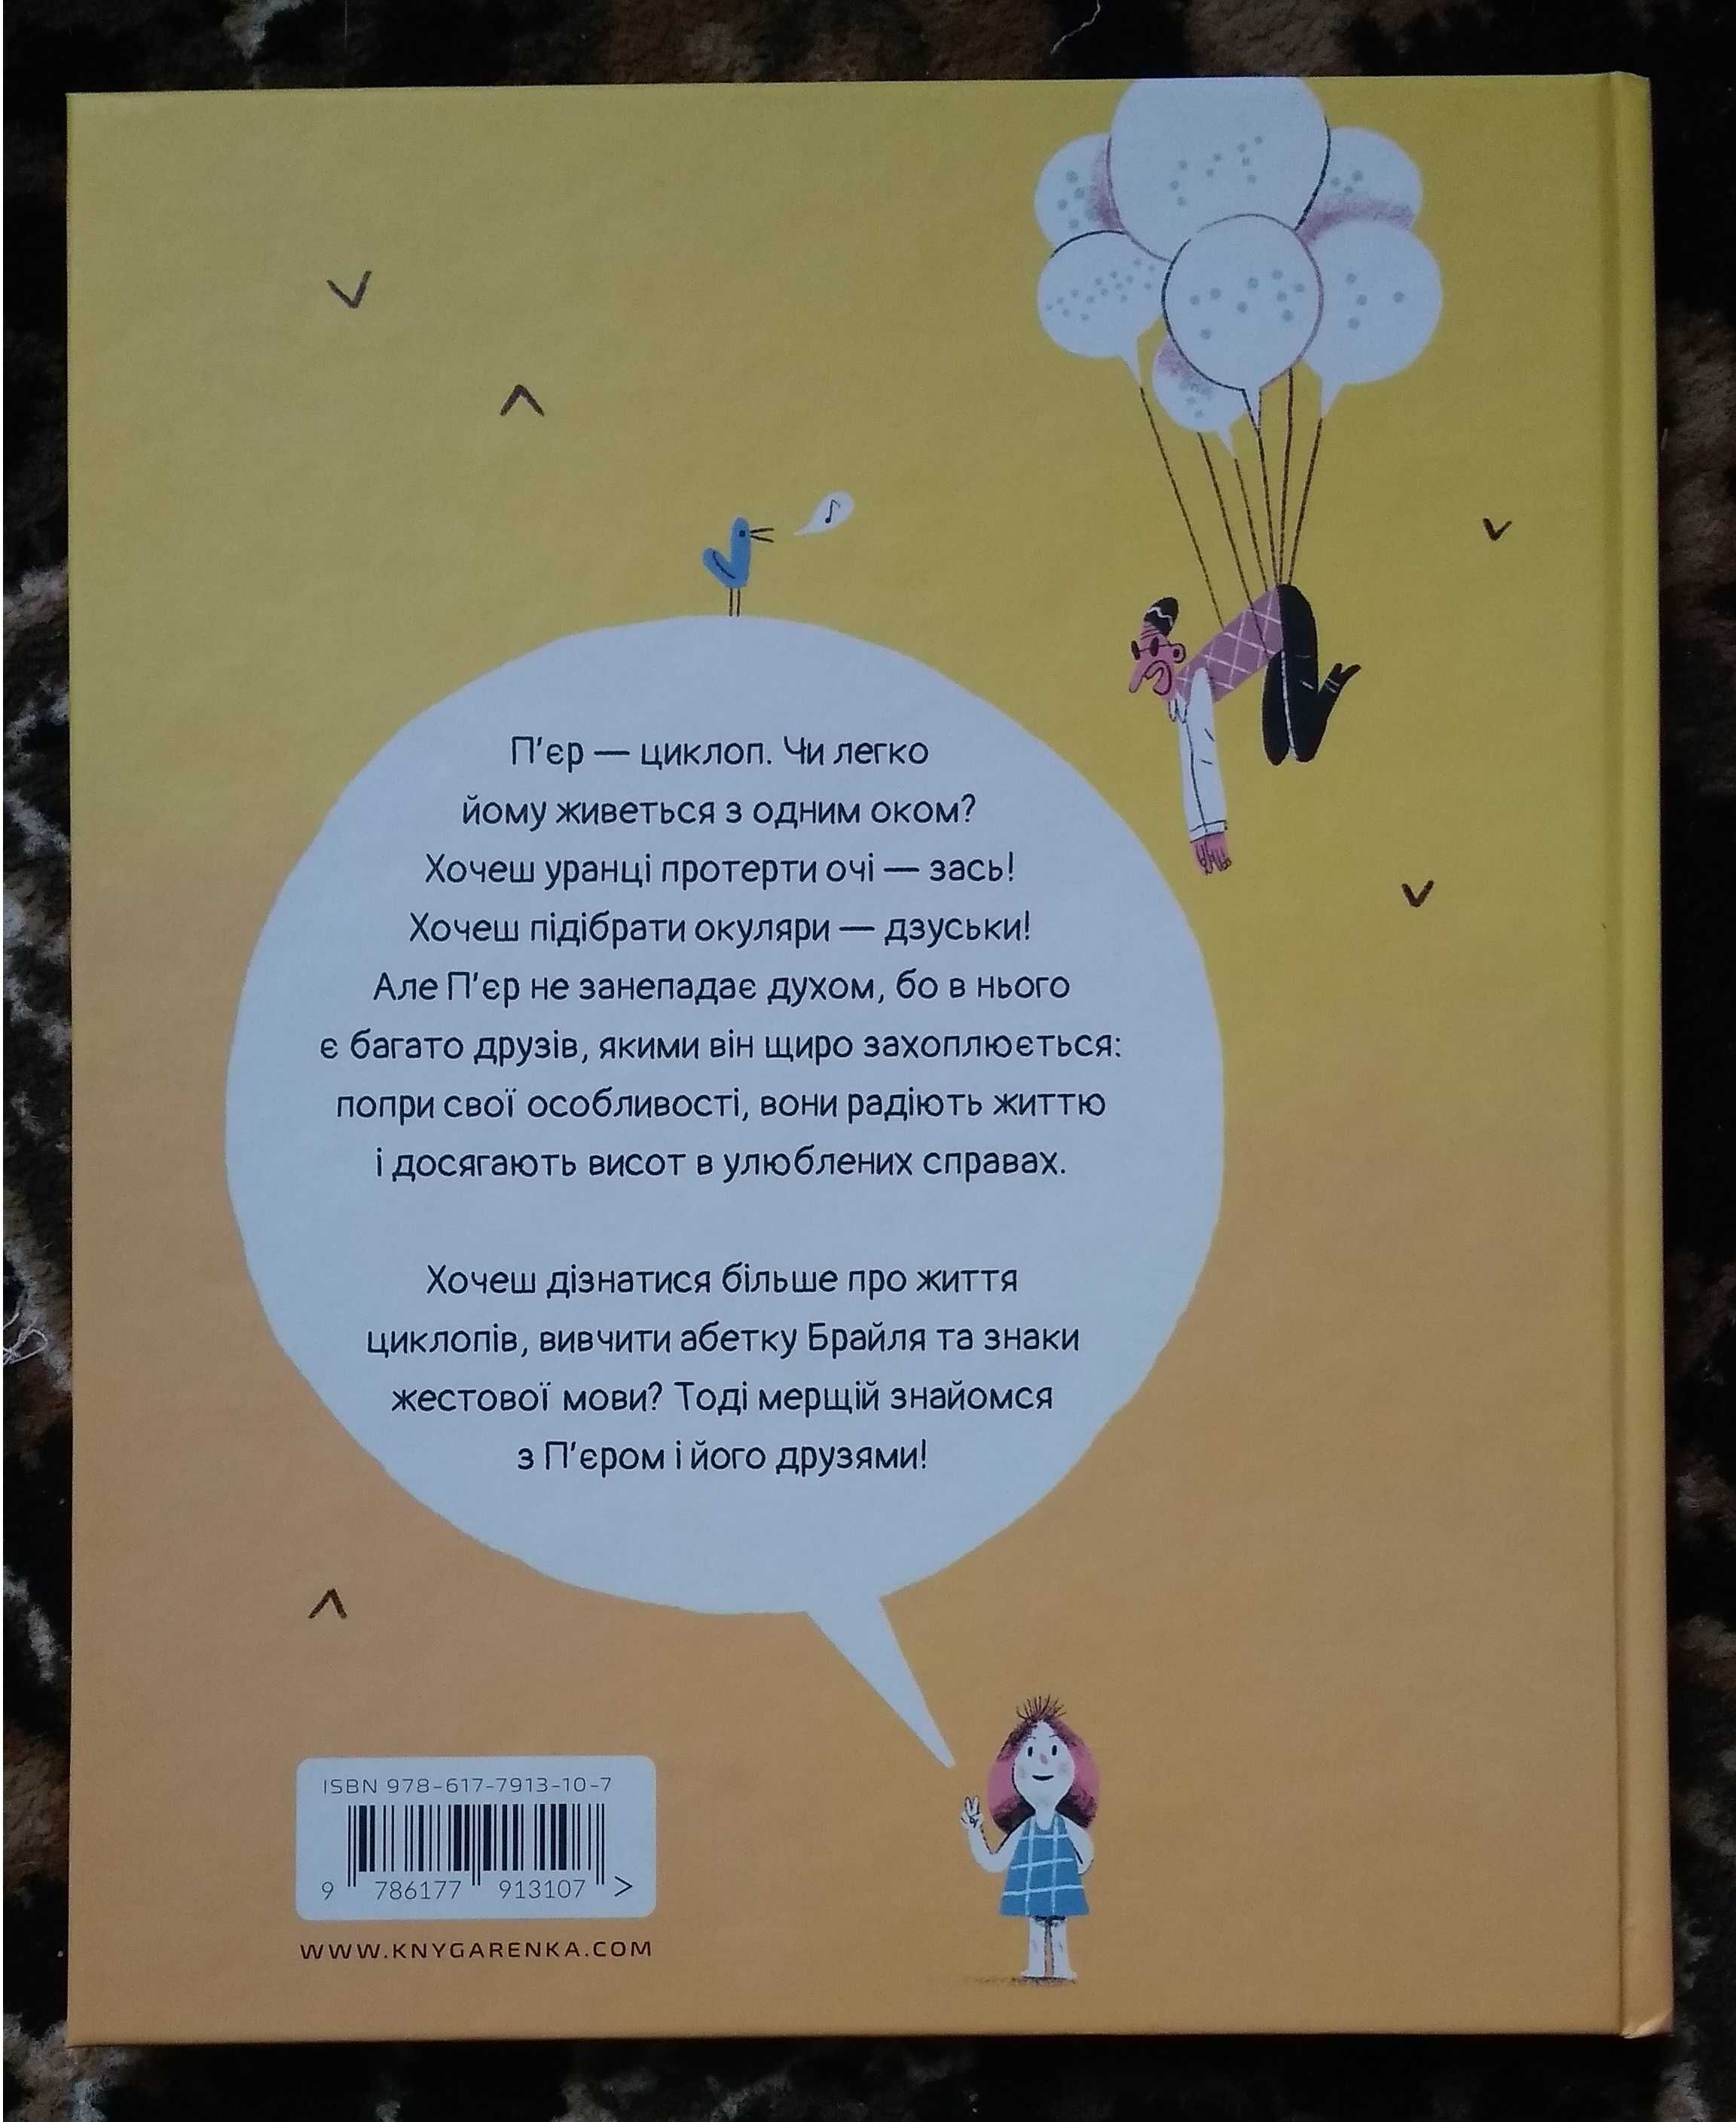 Дитяча книга "Чи легко жити циклопам?" (Олександр Шатохін)